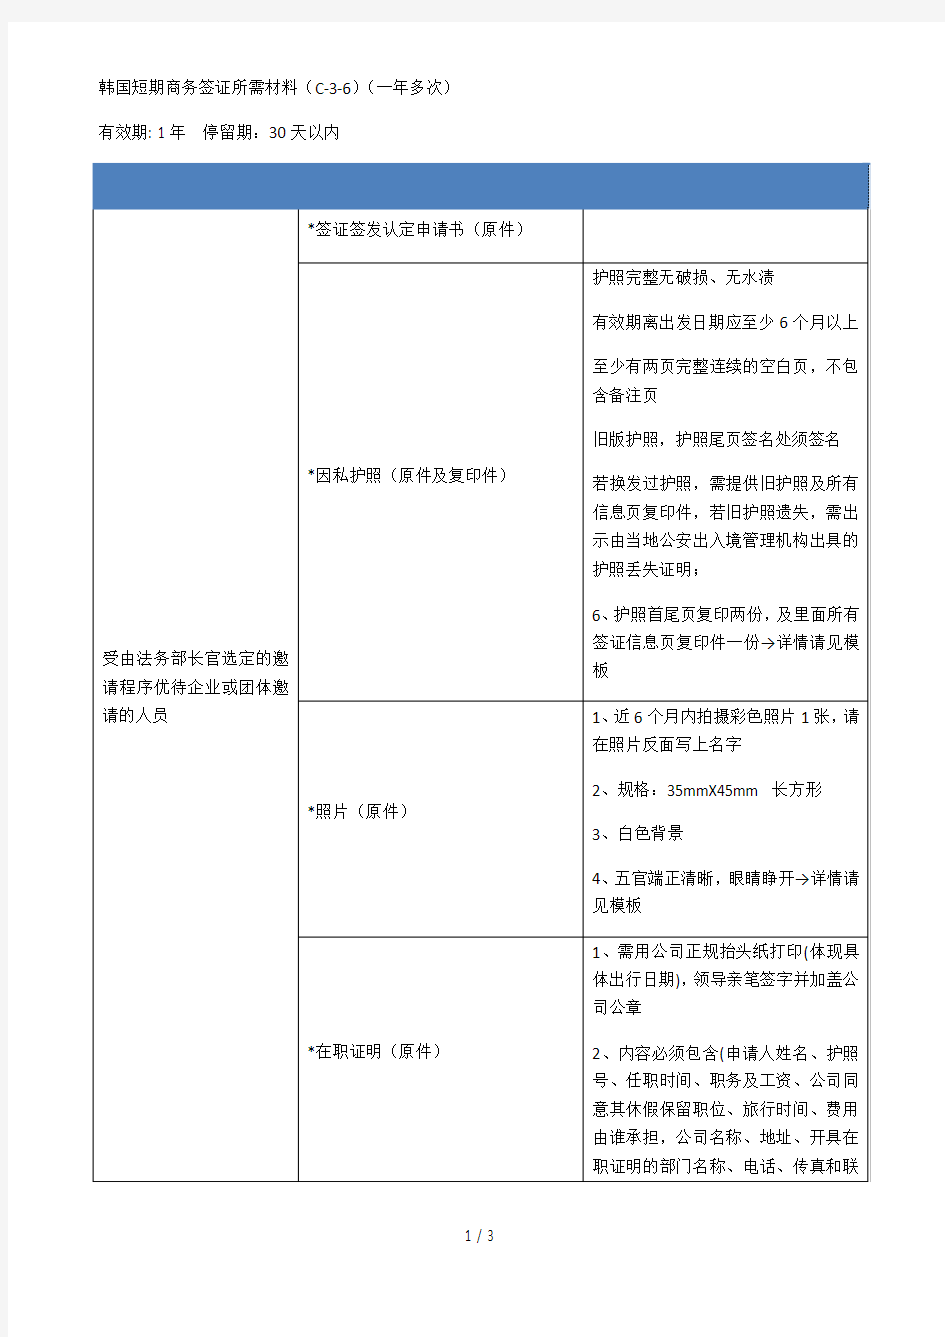 韩国短期商务签证所需材料(c36)(一年多次)